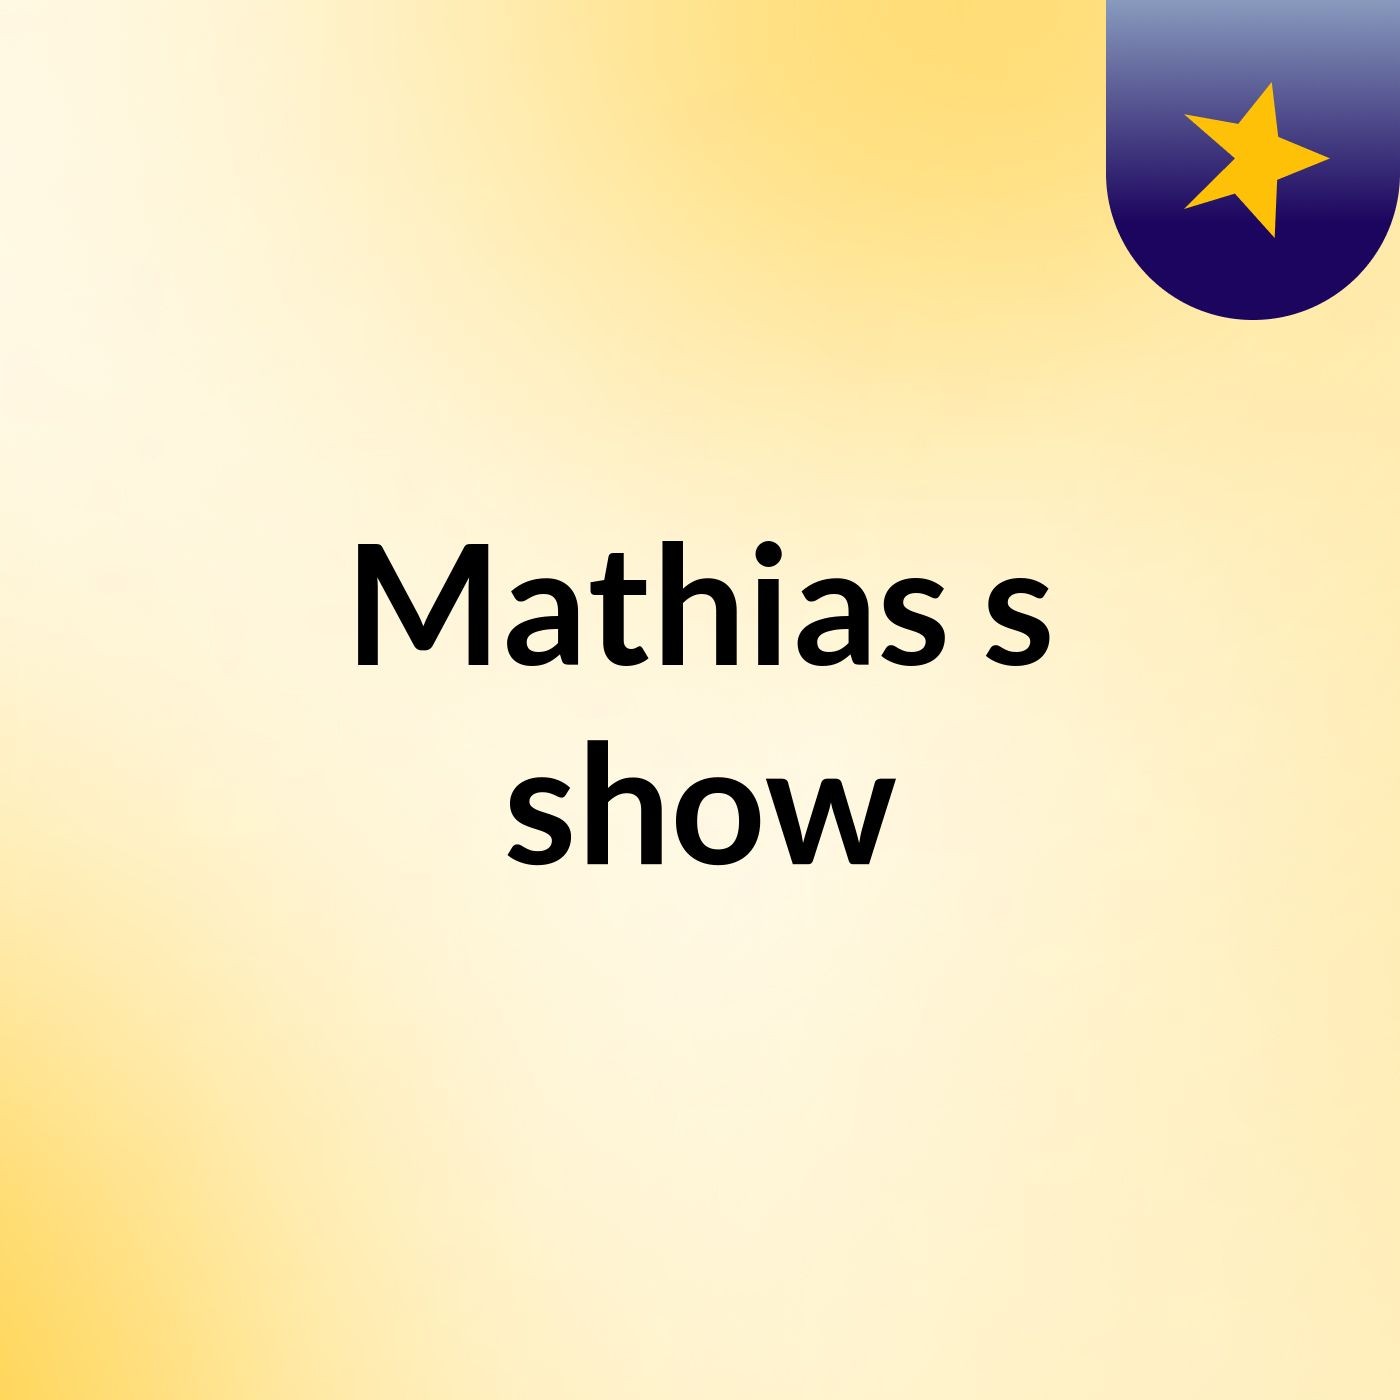 Mathias's show